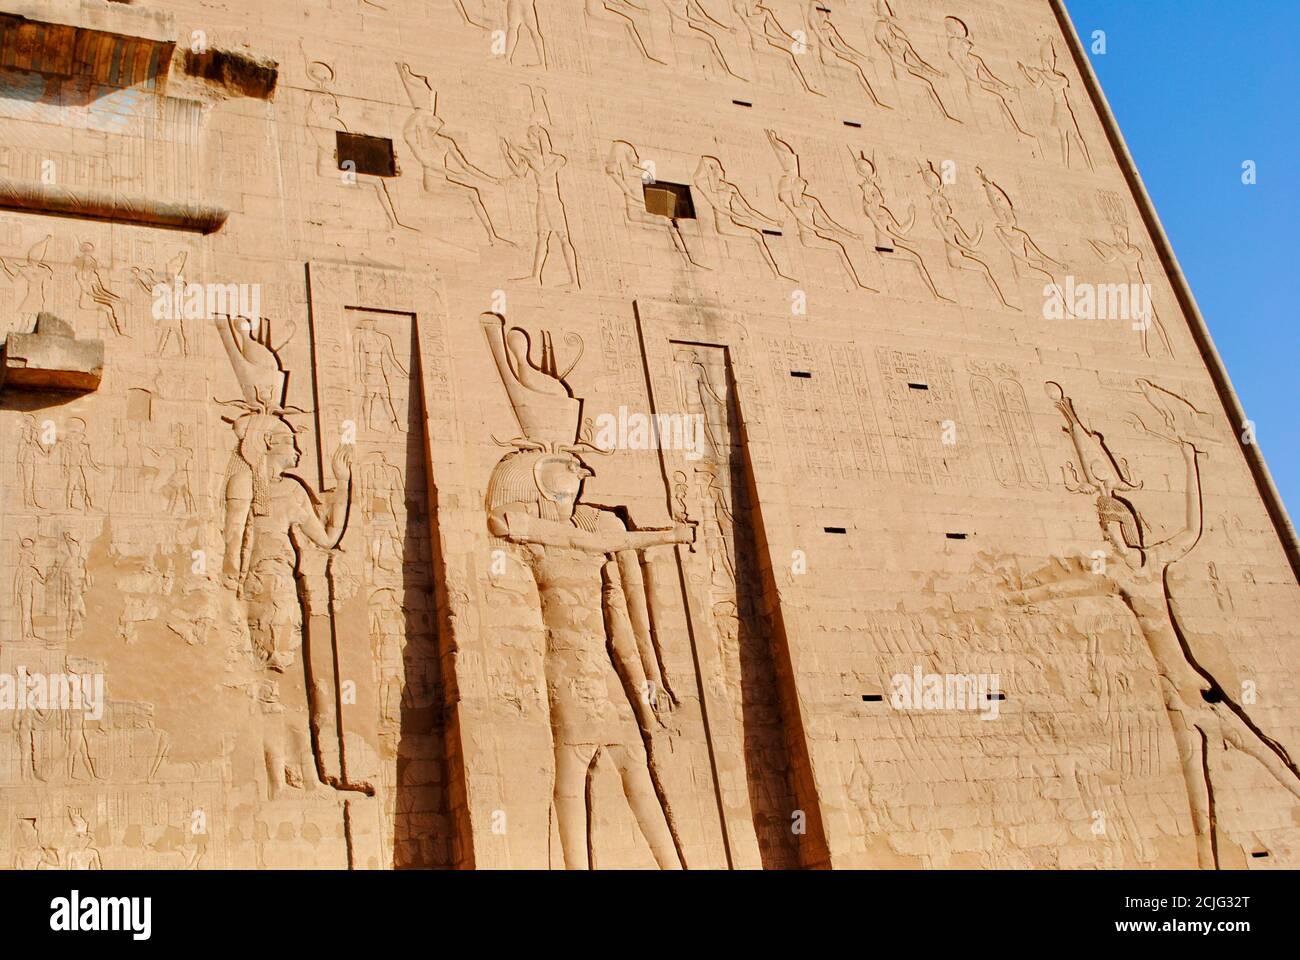 Le relief du Temple d'Horus, Dieu céleste, décrit comme un homme dirigé par un faucon. Edfu, rive ouest du Nil, Assouan Égypte. Banque D'Images